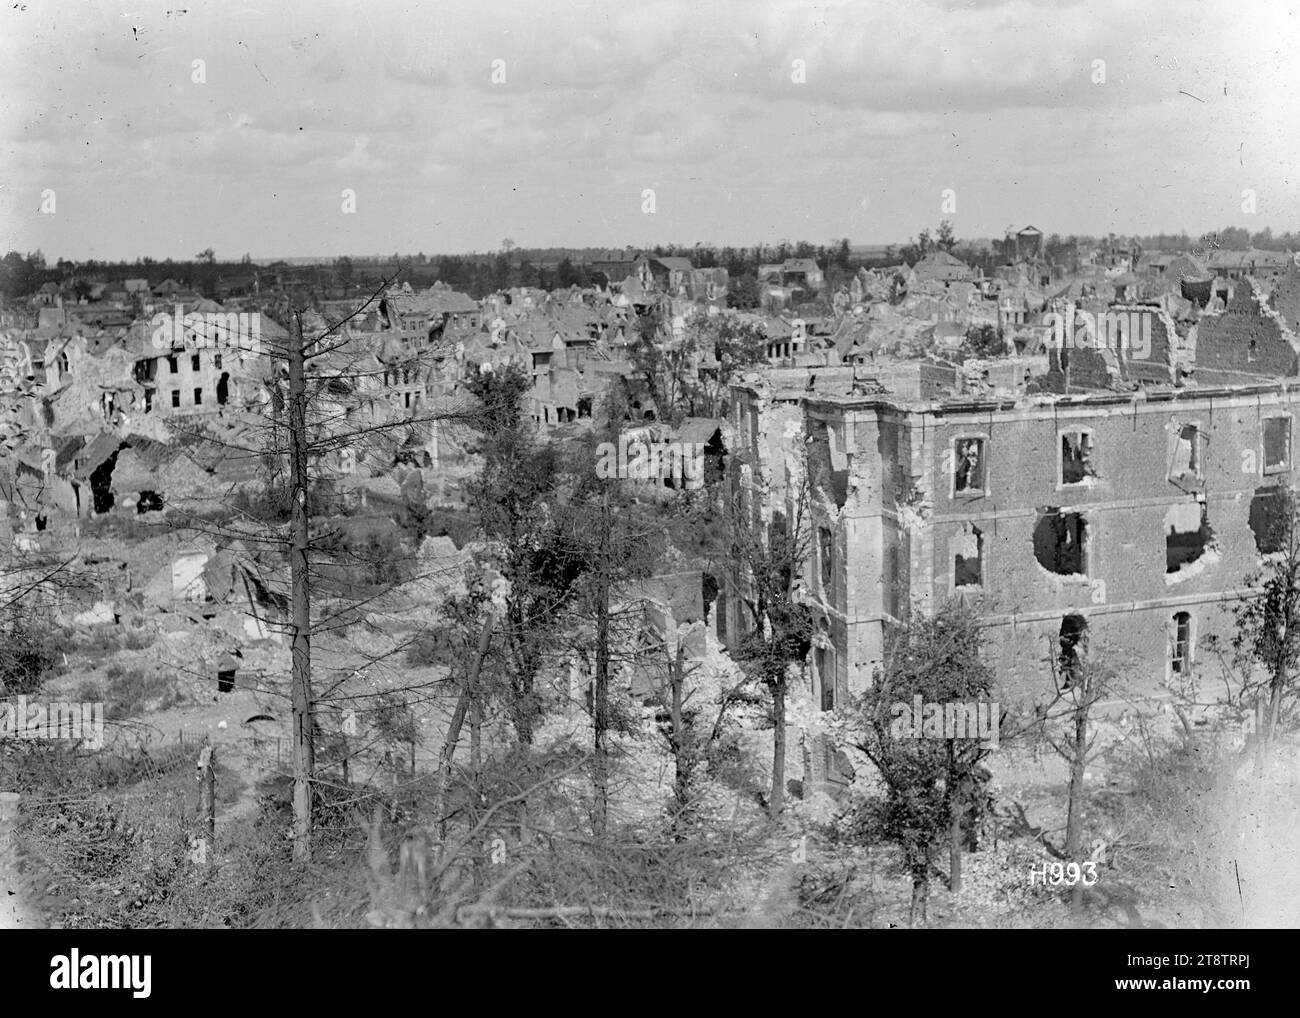 Blick auf Bapaume von der Zitadelle, erster Weltkrieg, Ein allgemeiner Blick über Bapaume von der Zitadelle. Zeigt, wie groß die Zerstörung der Stadt während des Ersten Weltkriegs war Im Vordergrund wurden einige Bäume beschädigt. Foto vom 30. August 1918 Stockfoto